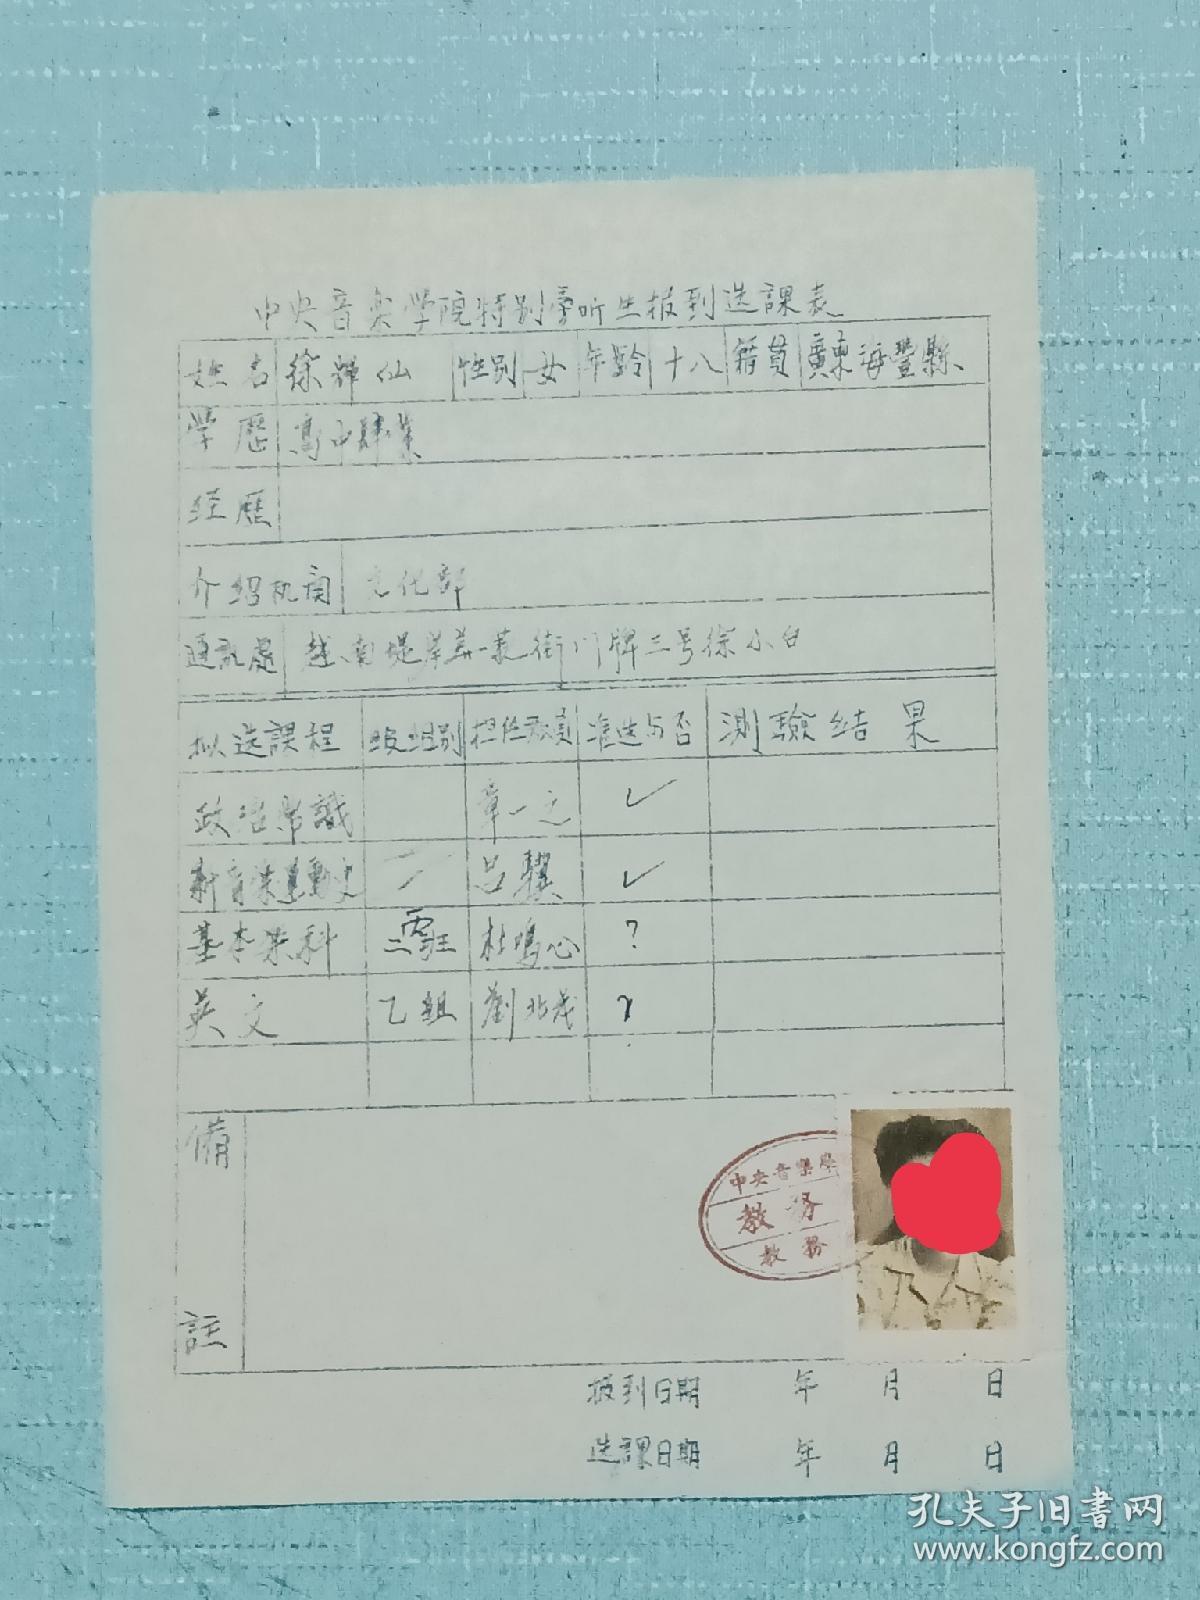 票证单据证书契约：中央音乐学院 特别旁听生报到选课表。 广东省海丰县人、 徐辉仙、 品好。